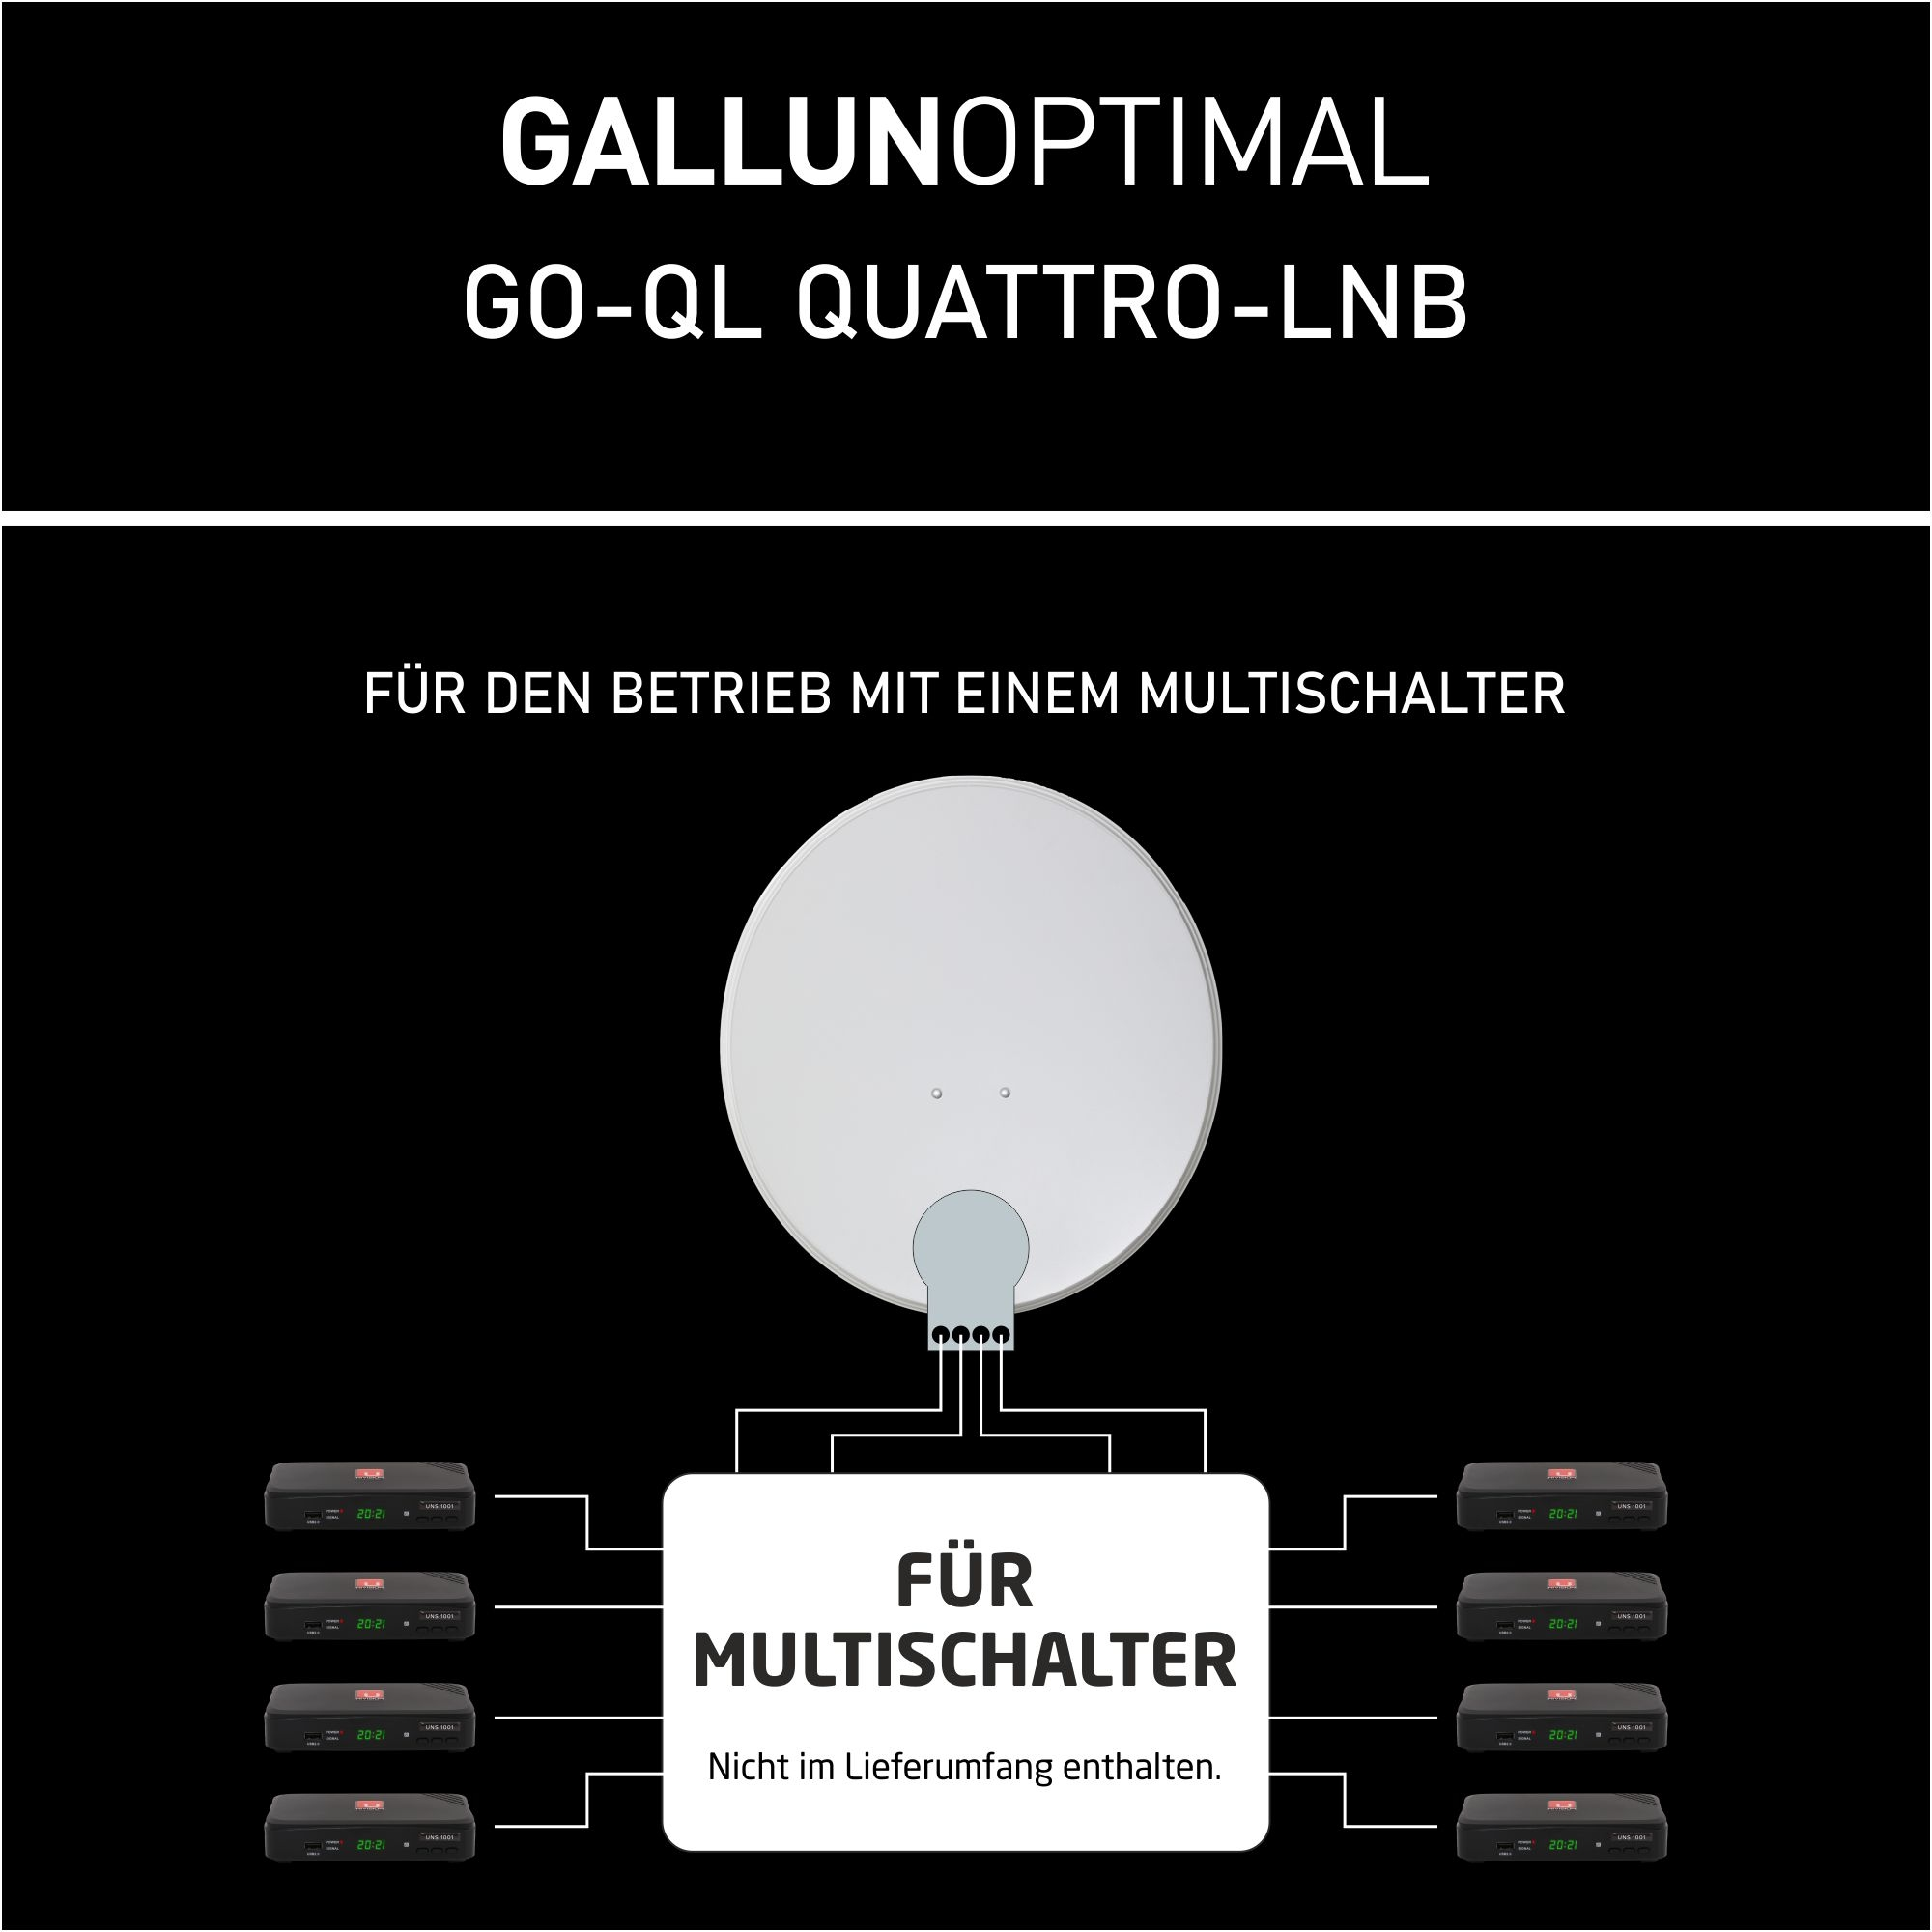 Quattro GALLUNOPTIMAL mm LNB für 40 GO-QL Multischalter